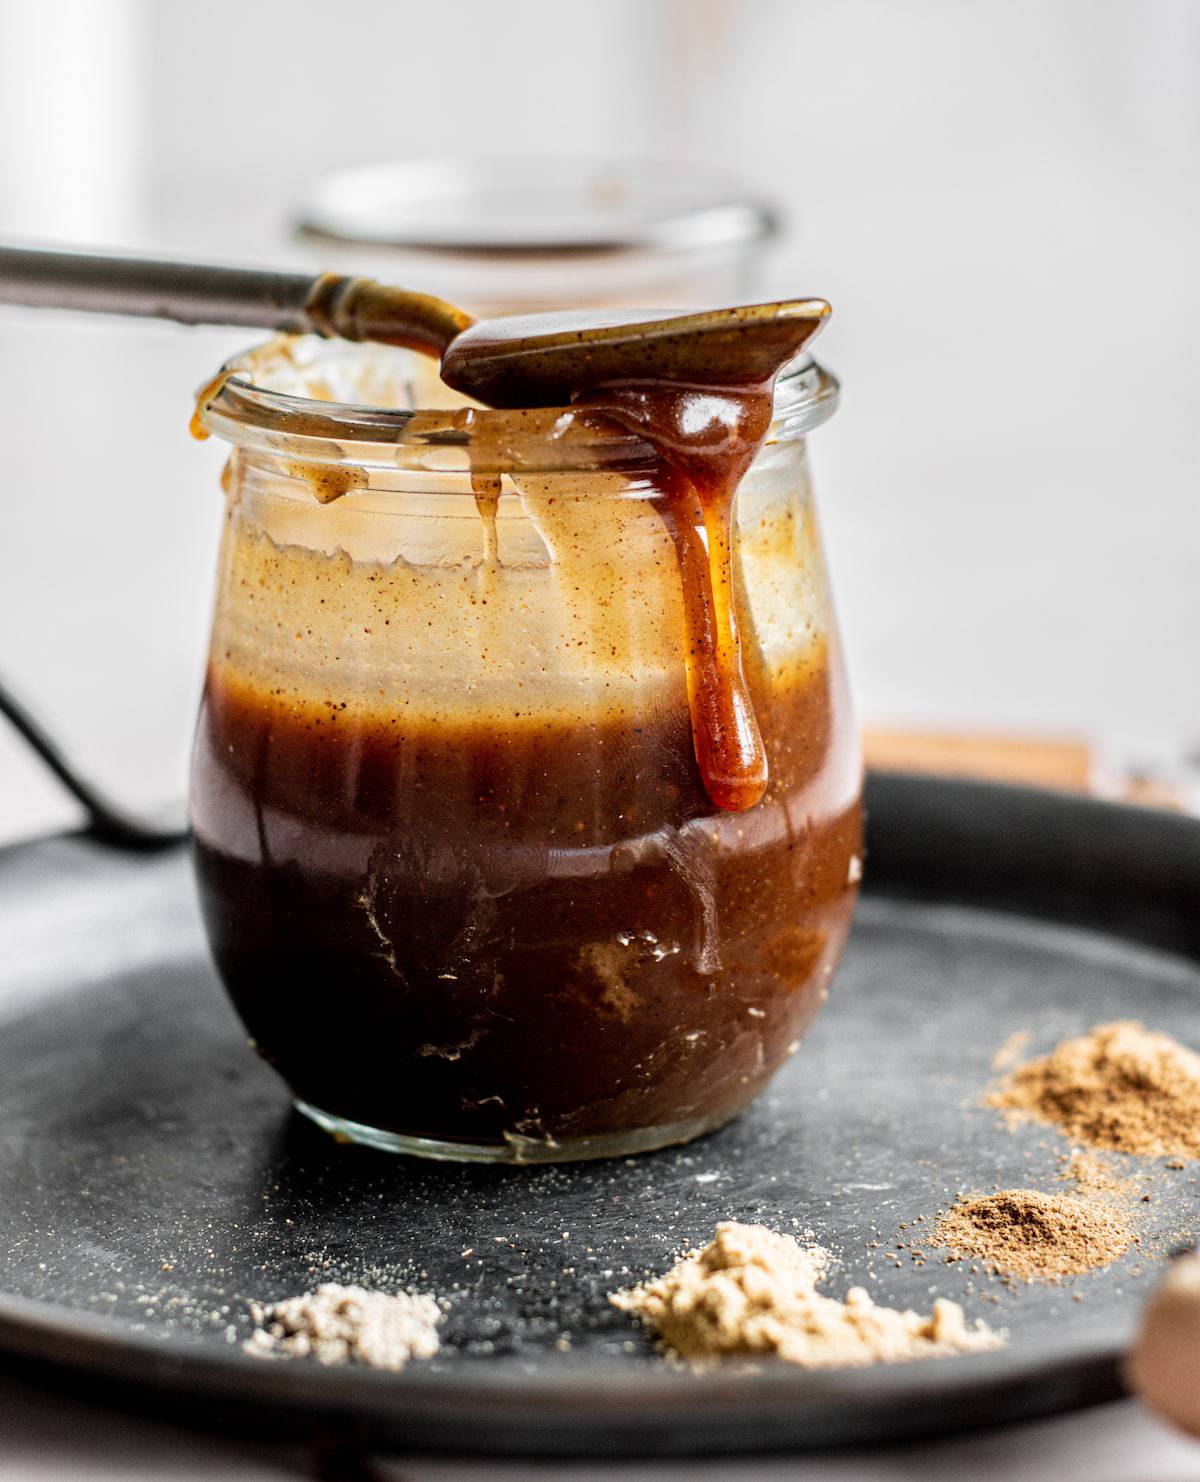 caramel dripping off a spoon on a jar.